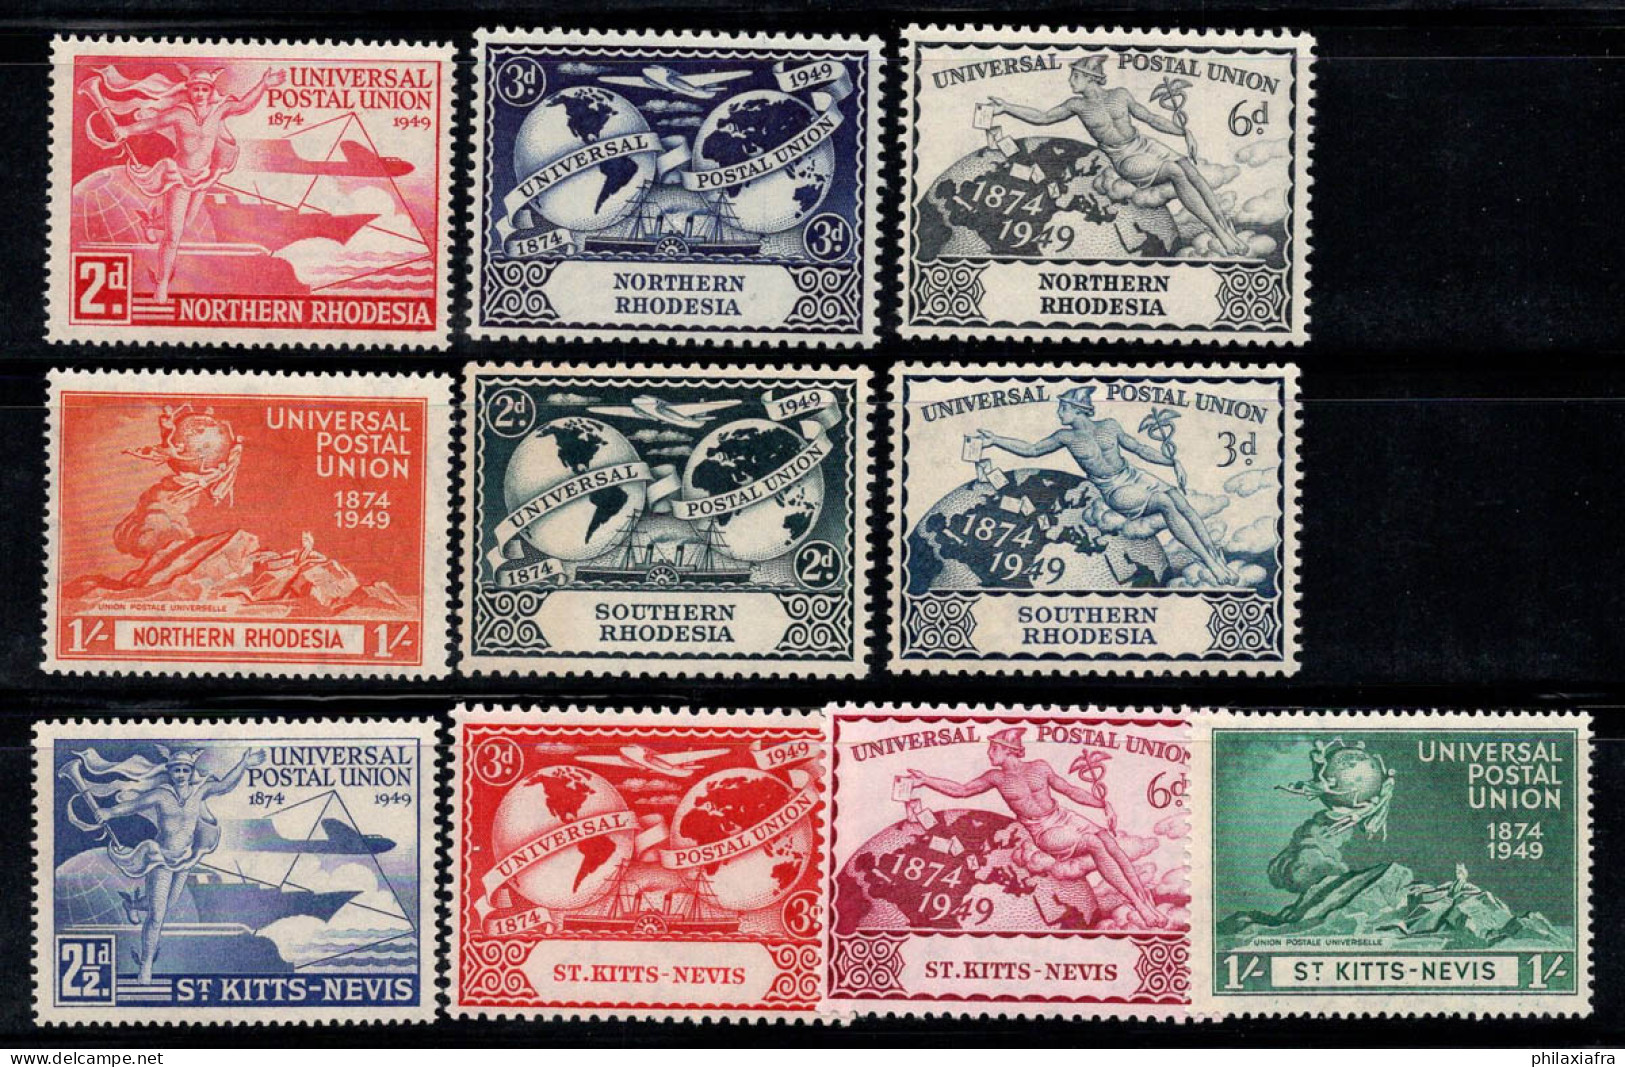 UPU 1949 Neuf ** 80% Rhodésie, Saint-Kitts-Nevis - UPU (Union Postale Universelle)